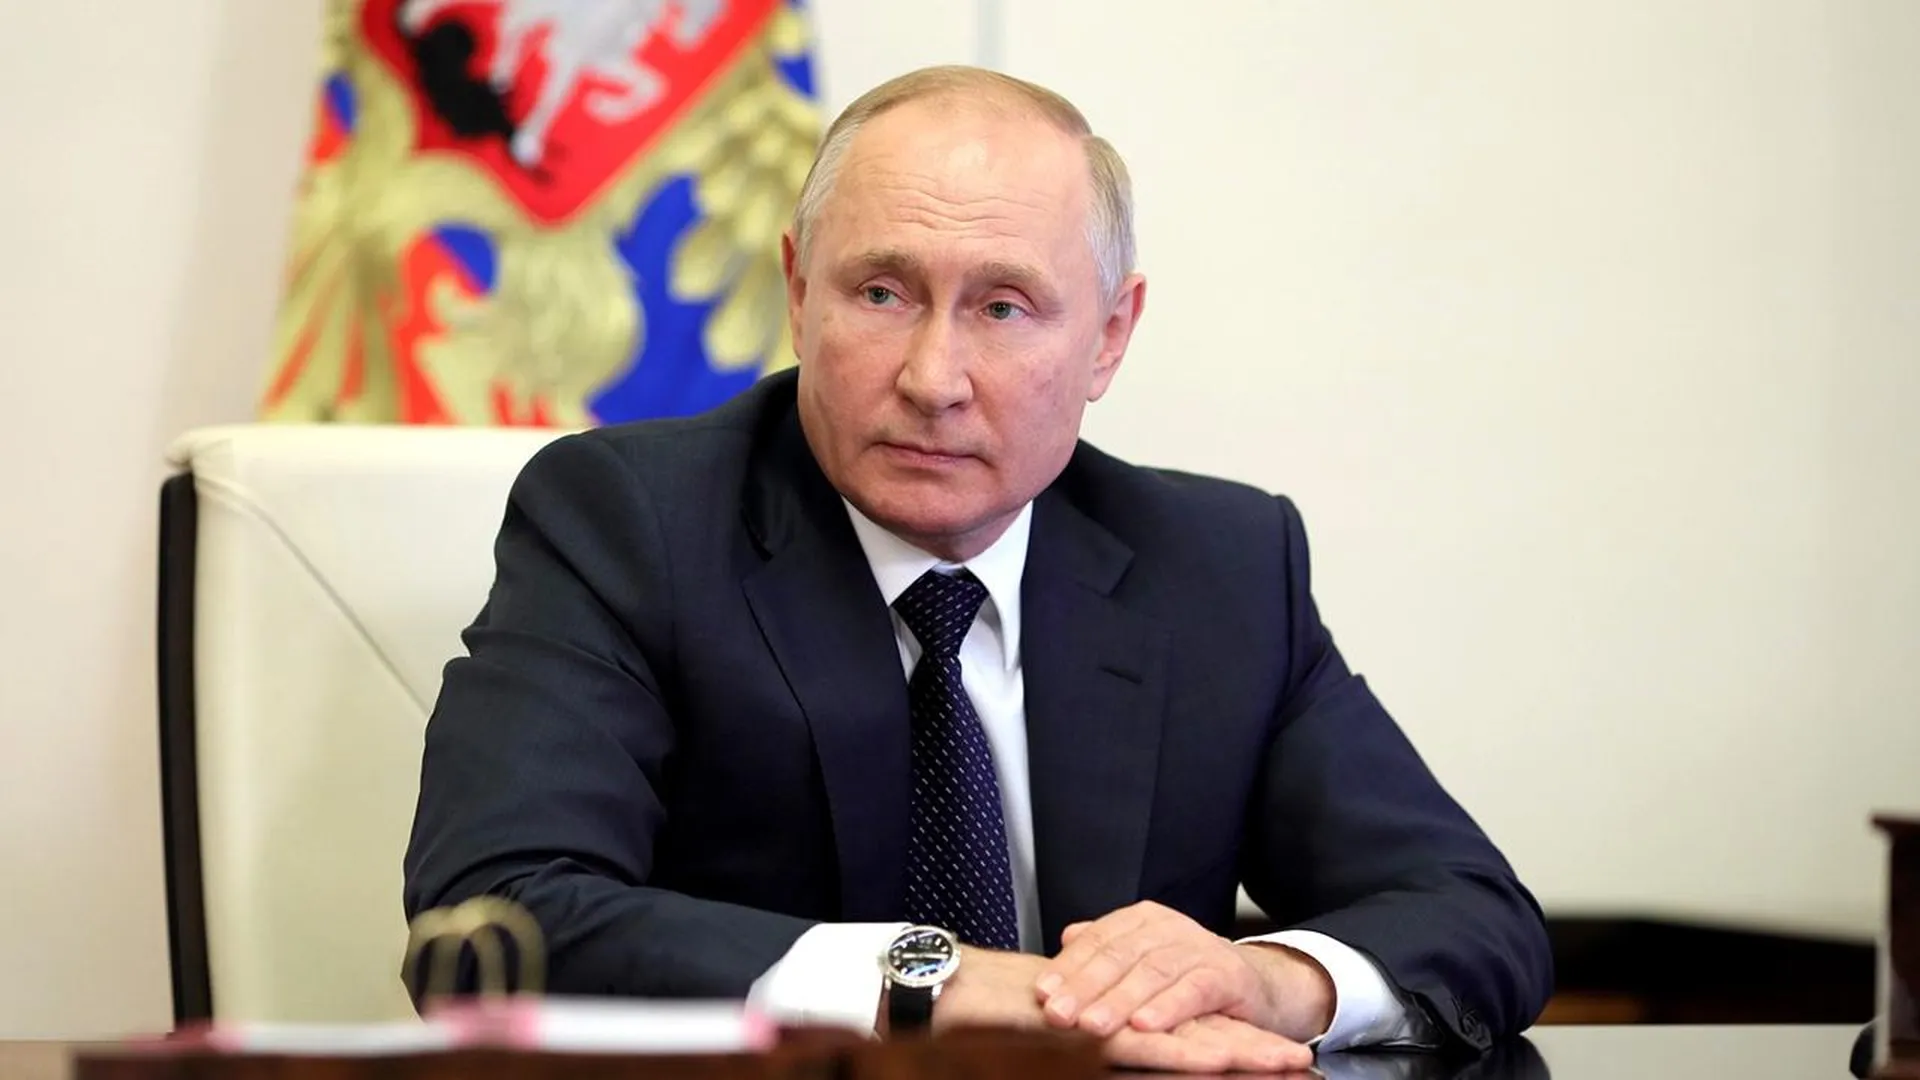 Бояться и договариваться: интервью Путина американцу Карлсону повлияет на ход президентской гонки в США